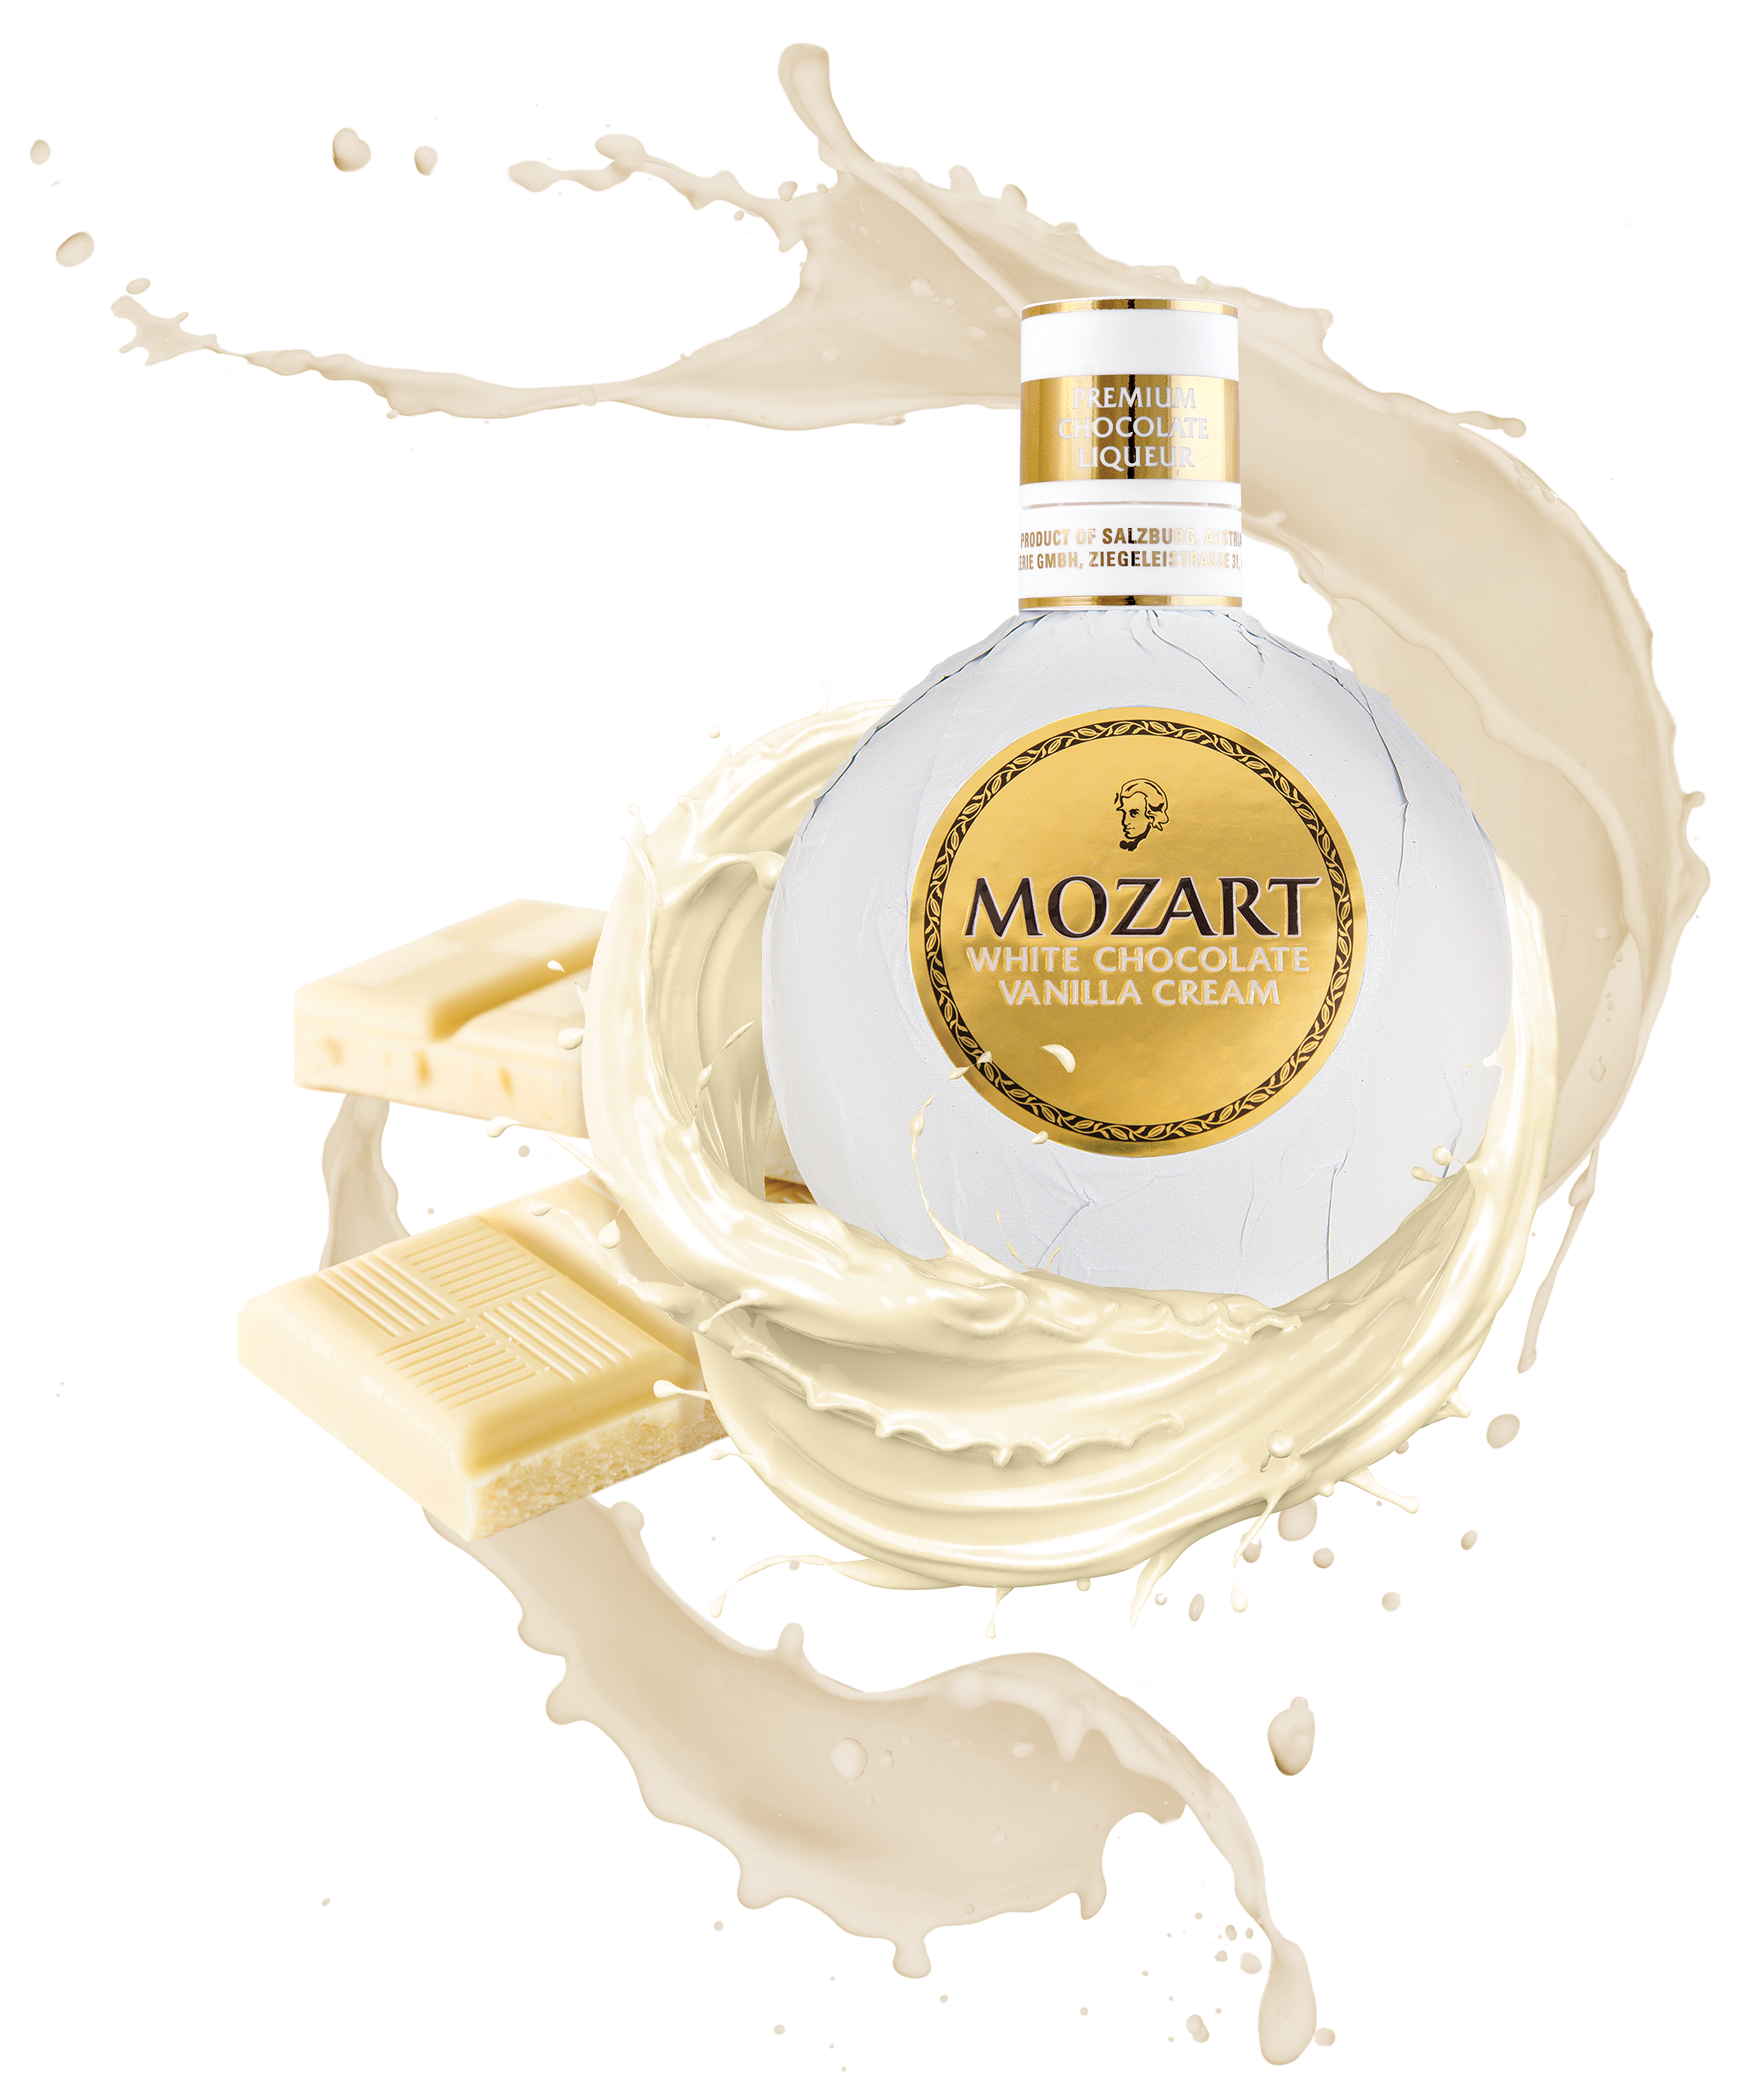 Mozart WHITE Chocolate Vanilla Cream 0,5l 15%vol.